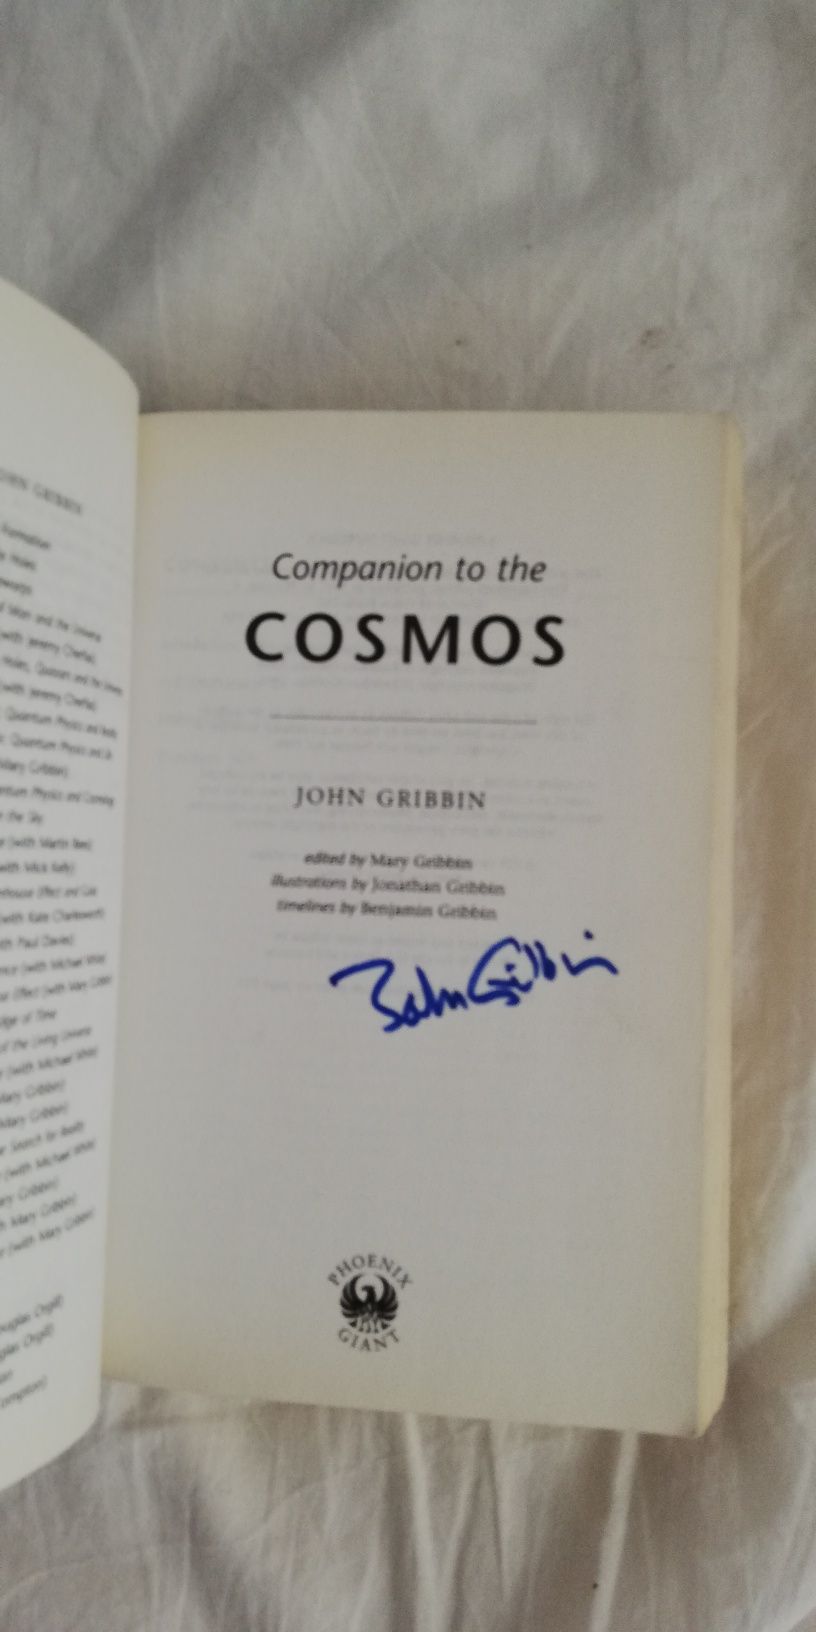 Livro "Companion to the Cosmos", autografado pelo autor (portes grátis